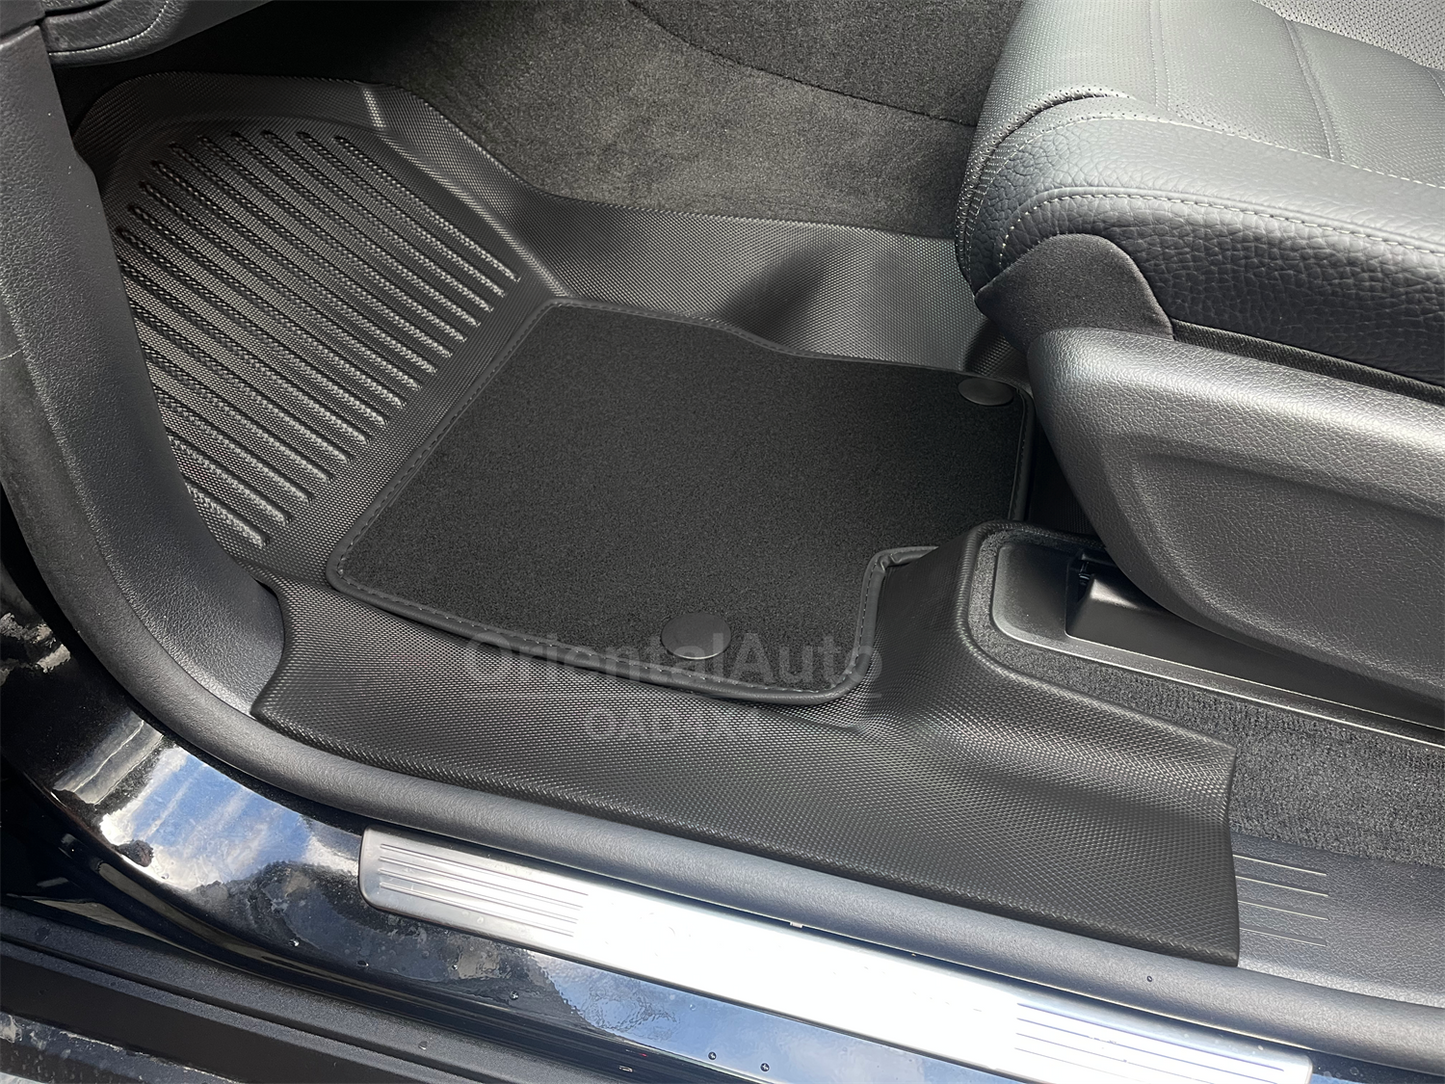 5D TPE Floor Mats & 3D Cargo Mat for Mercedes Benz GLS-CLASS X167 2019+  Upper Detachable Carpet Floor Mat with Door Sills Covered + Boot Mat